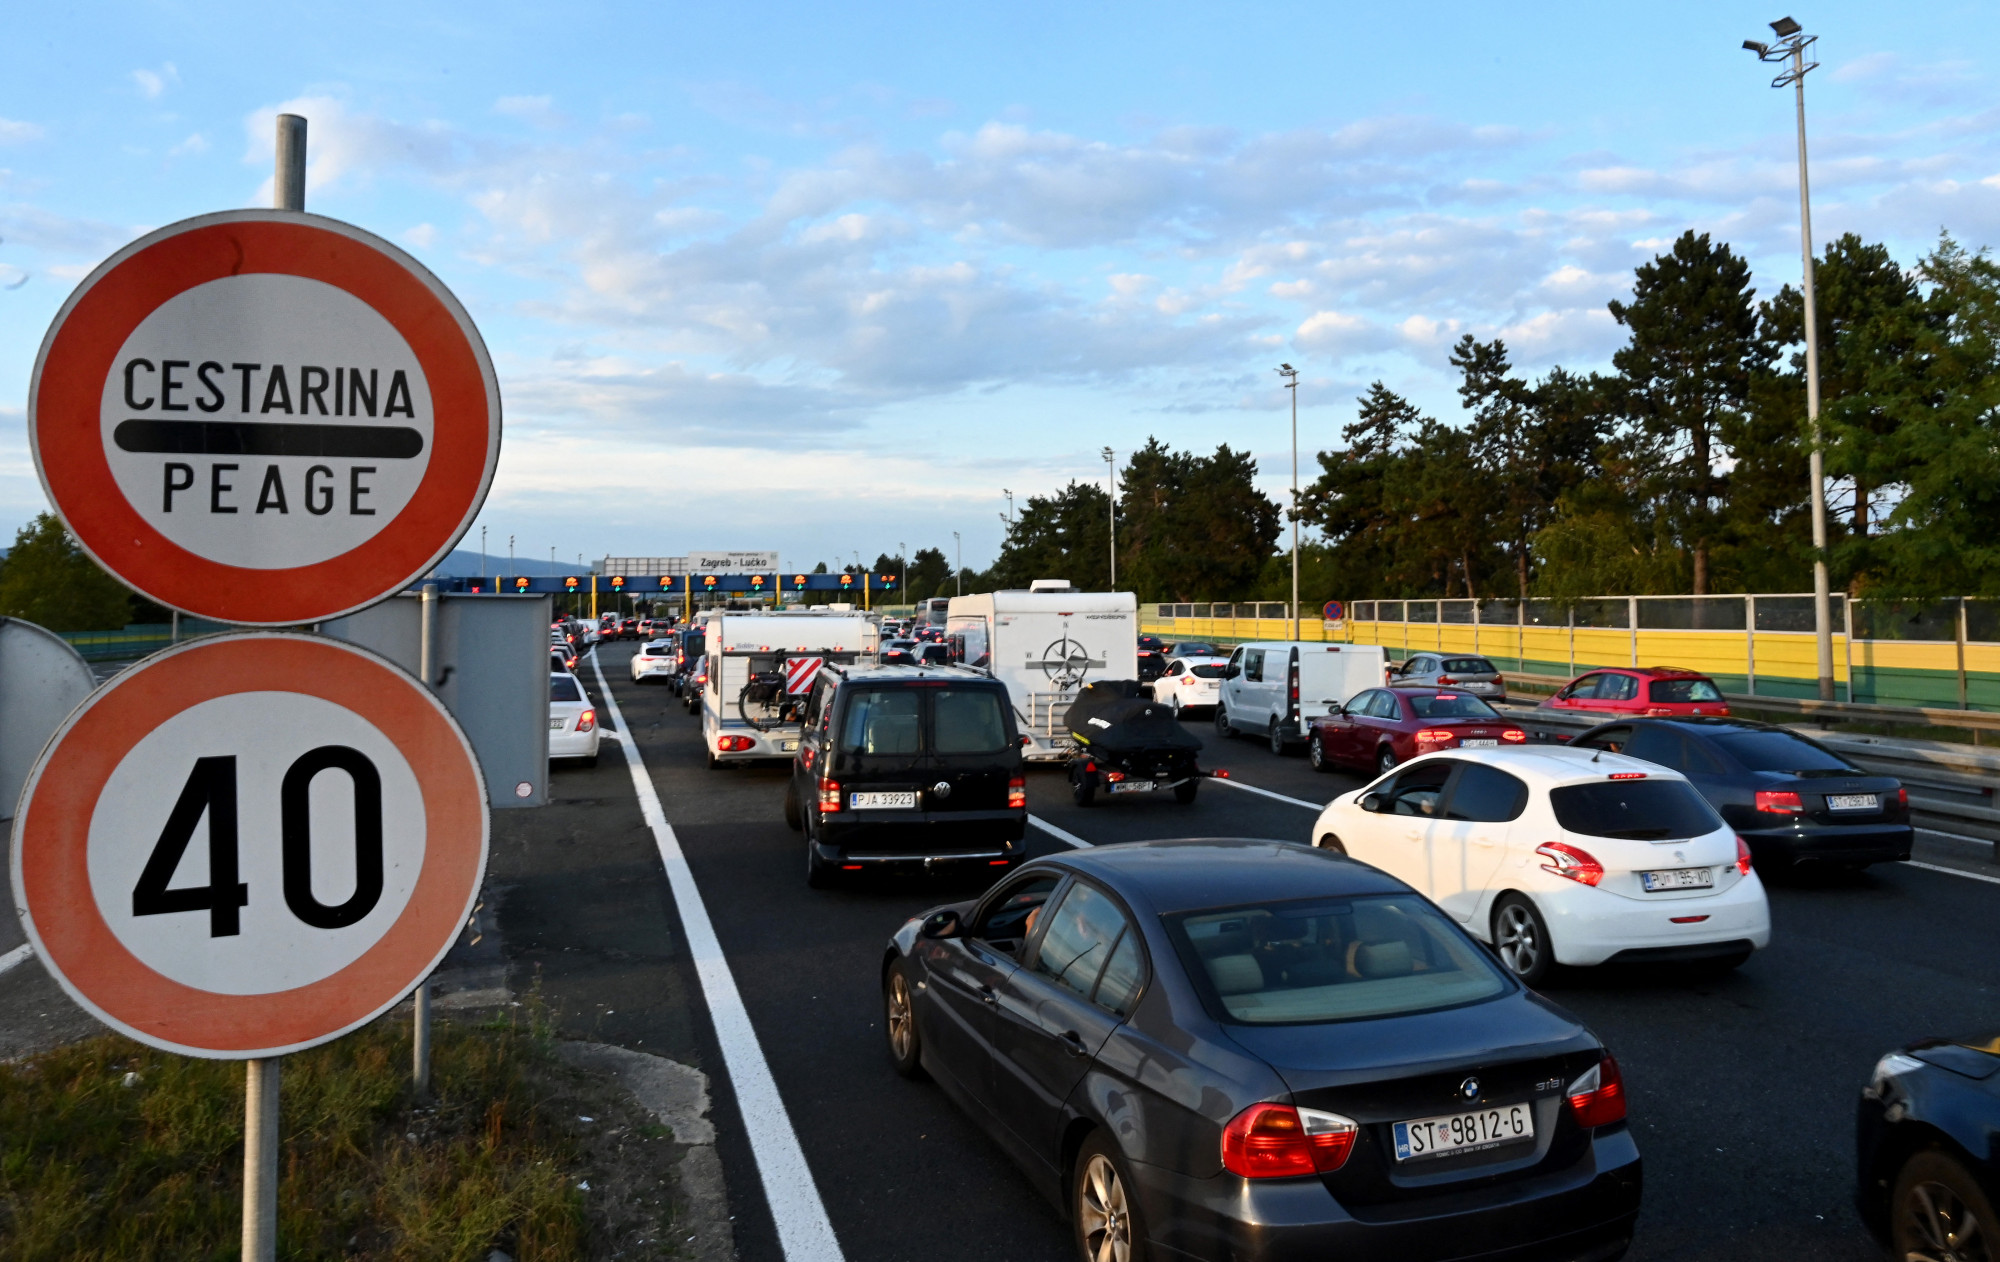 Magyar rendszámú kisbusz rohant bele egy kocsiba a horvát autópályán, egy házaspár belehalt, a gyerekük kórházban